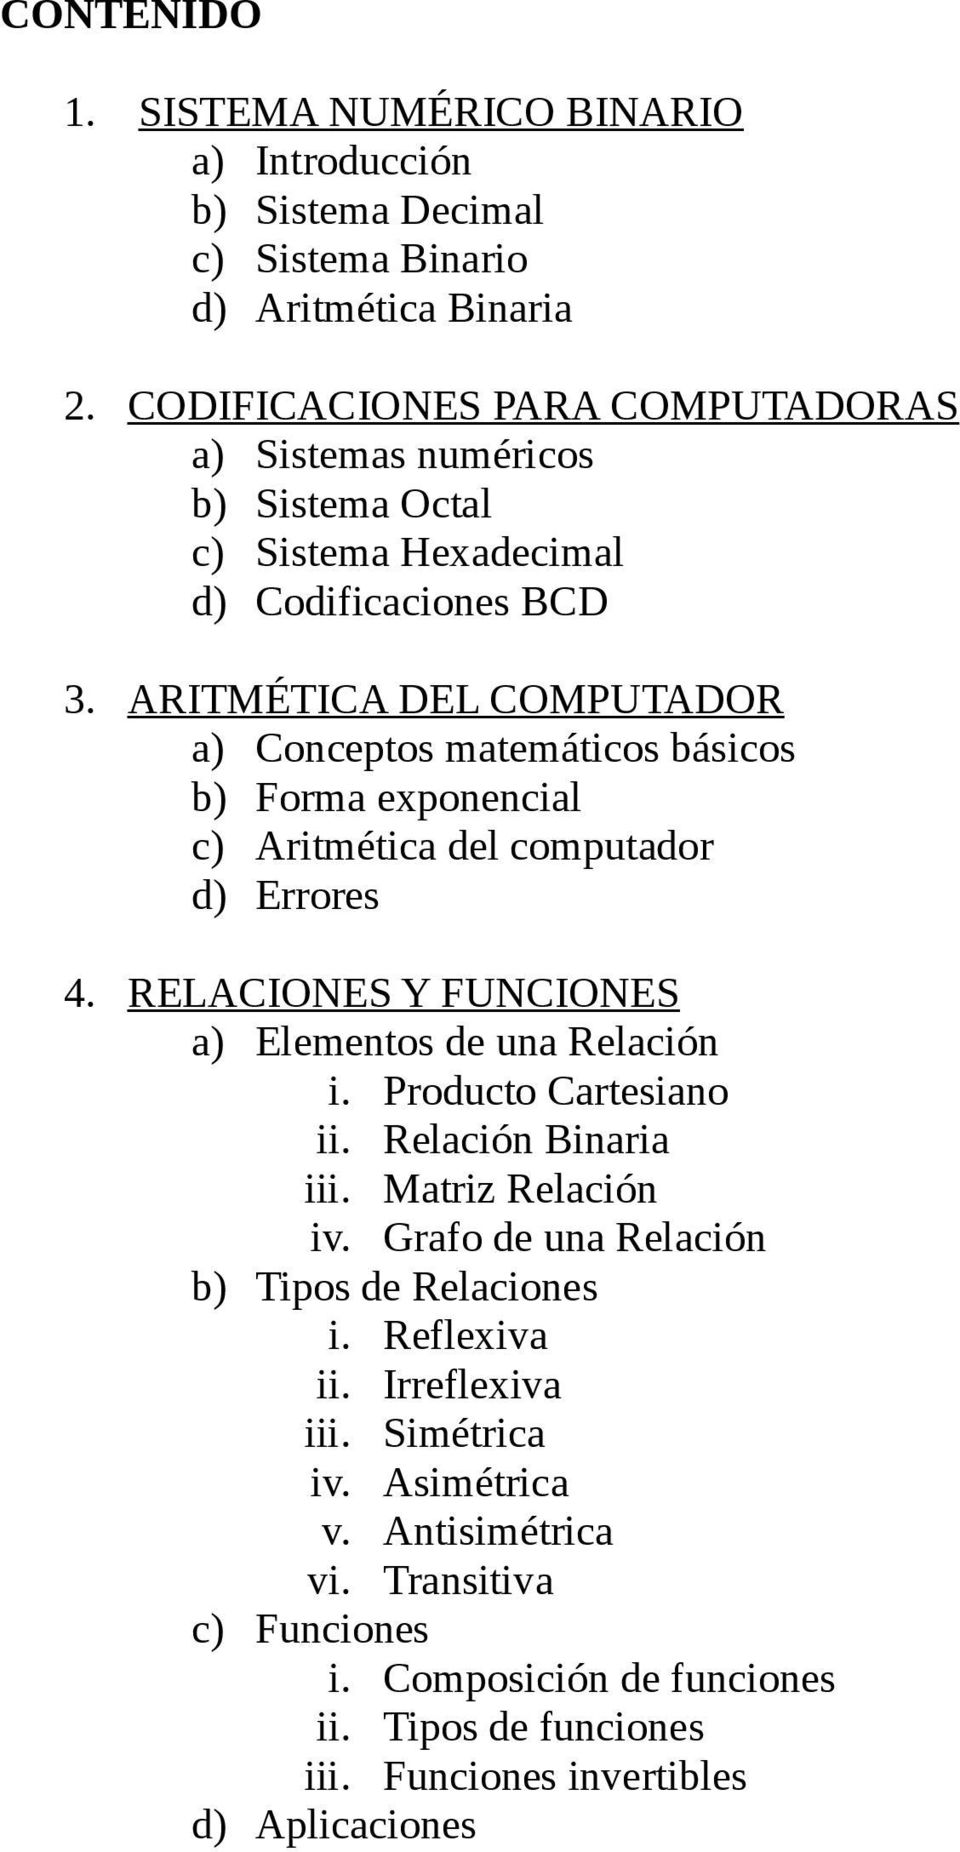 ARITMÉTICA DEL COMPUTADOR a) Conceptos matemáticos básicos b) Forma exponencial c) Aritmética del computador d) Errores 4. RELACIONES Y FUNCIONES a) Elementos de una Relación i.